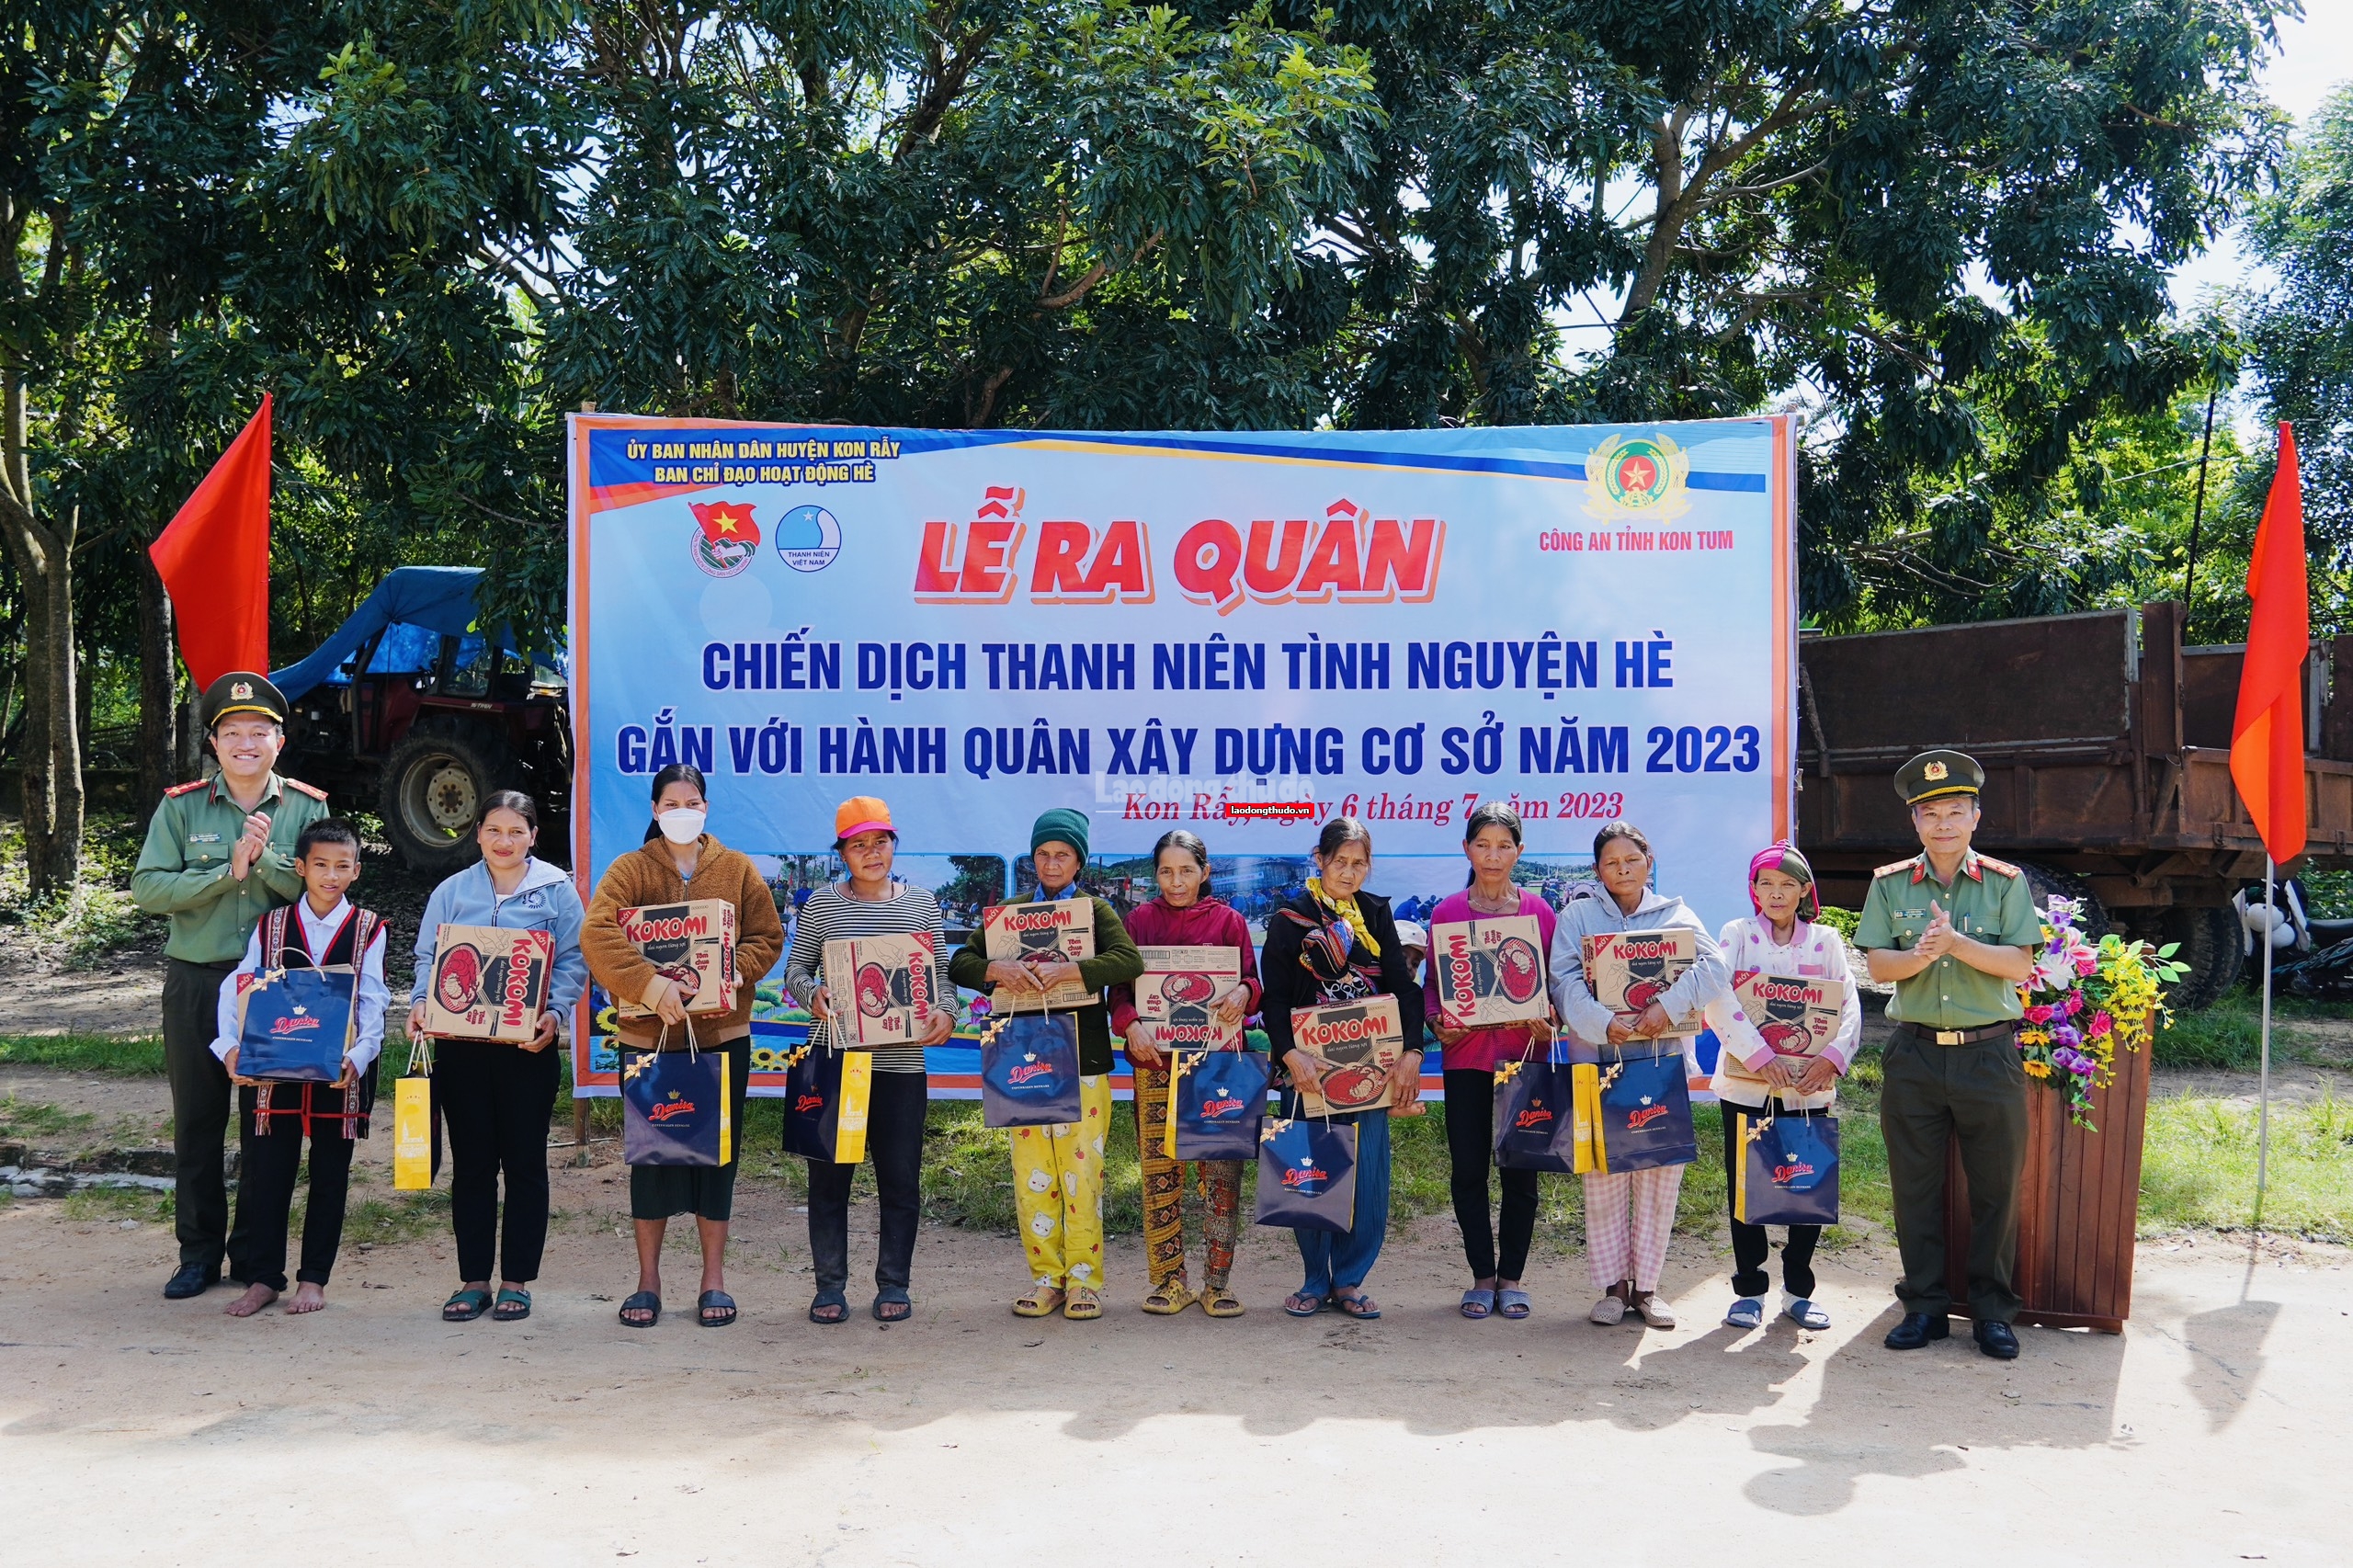 Chiến dịch thanh niên tình nguyện hè Kon Tum: Giúp đỡ người nghèo và học sinh có hoàn cảnh khó khăn